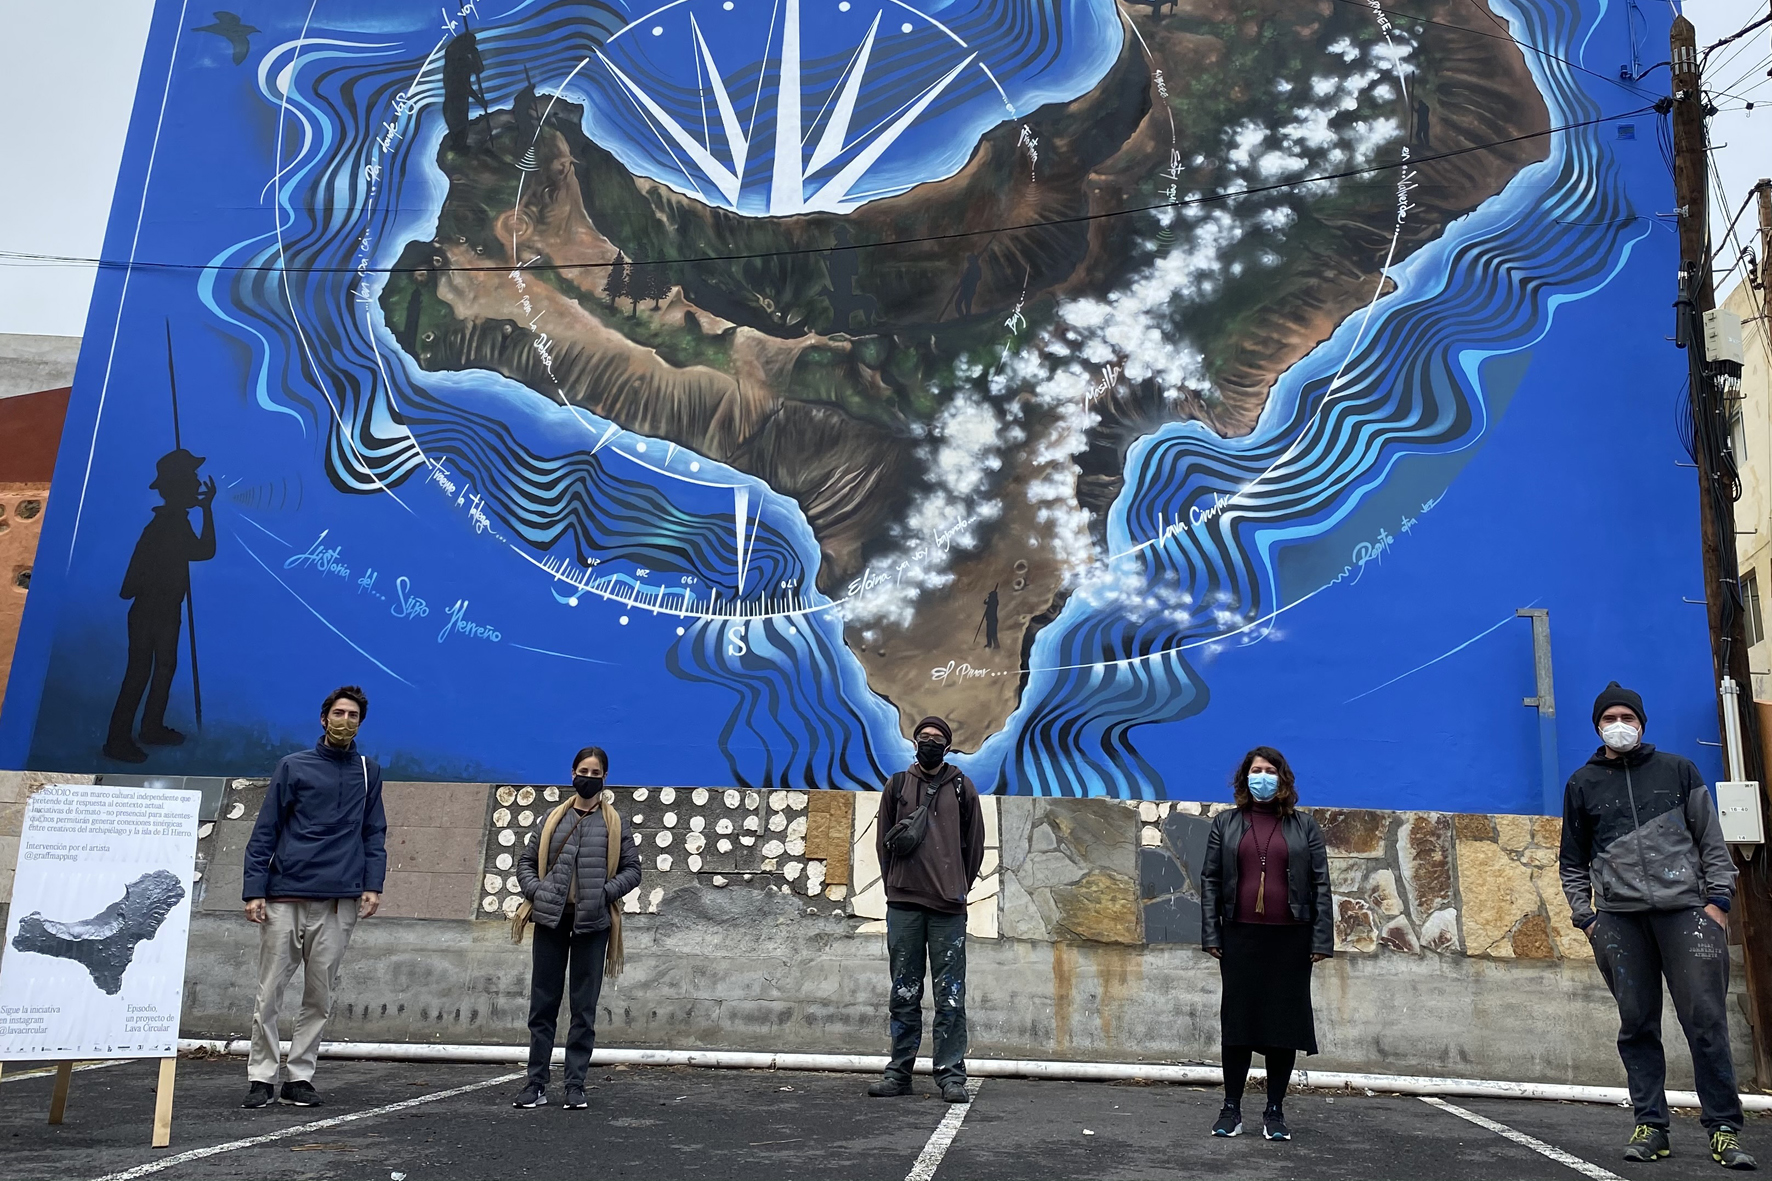 El Pinar rinde homenaje a los silbadores y silbadoras herreños a través de un mural gigante